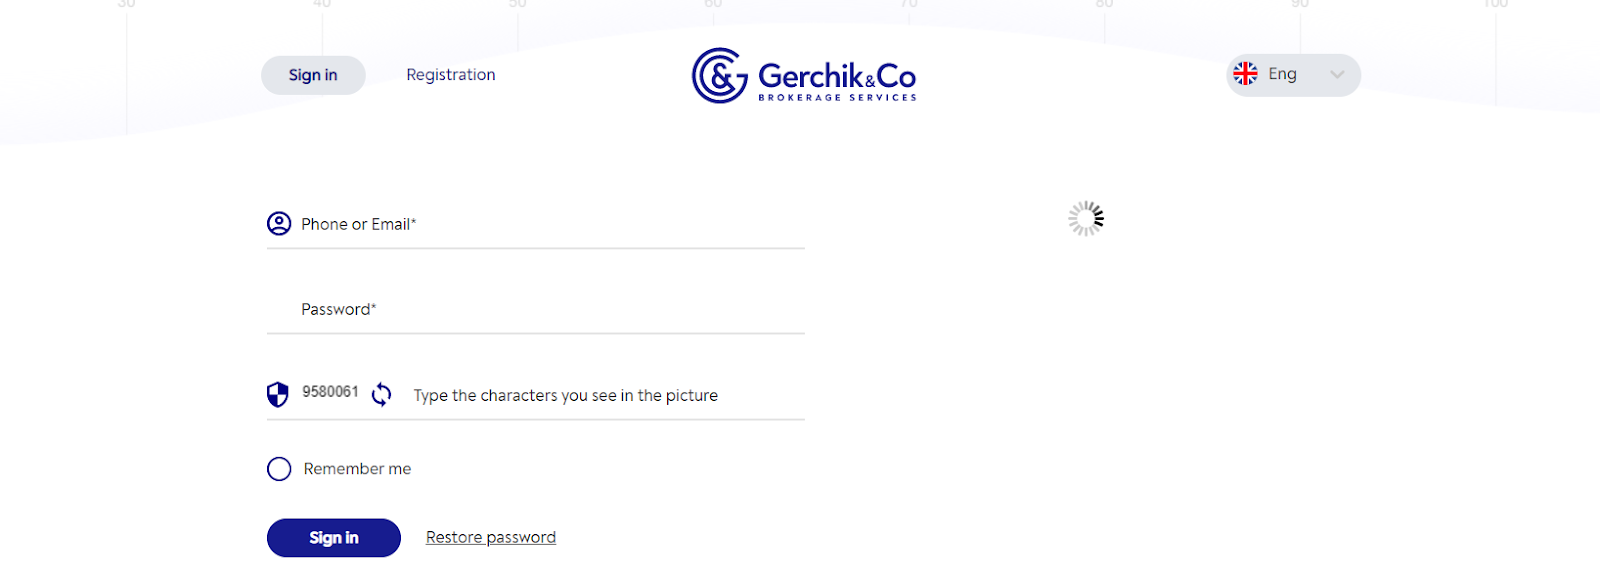 Visión general de la cuenta de usuario de Gerchik&Co' - Inicio de sesión y verificación